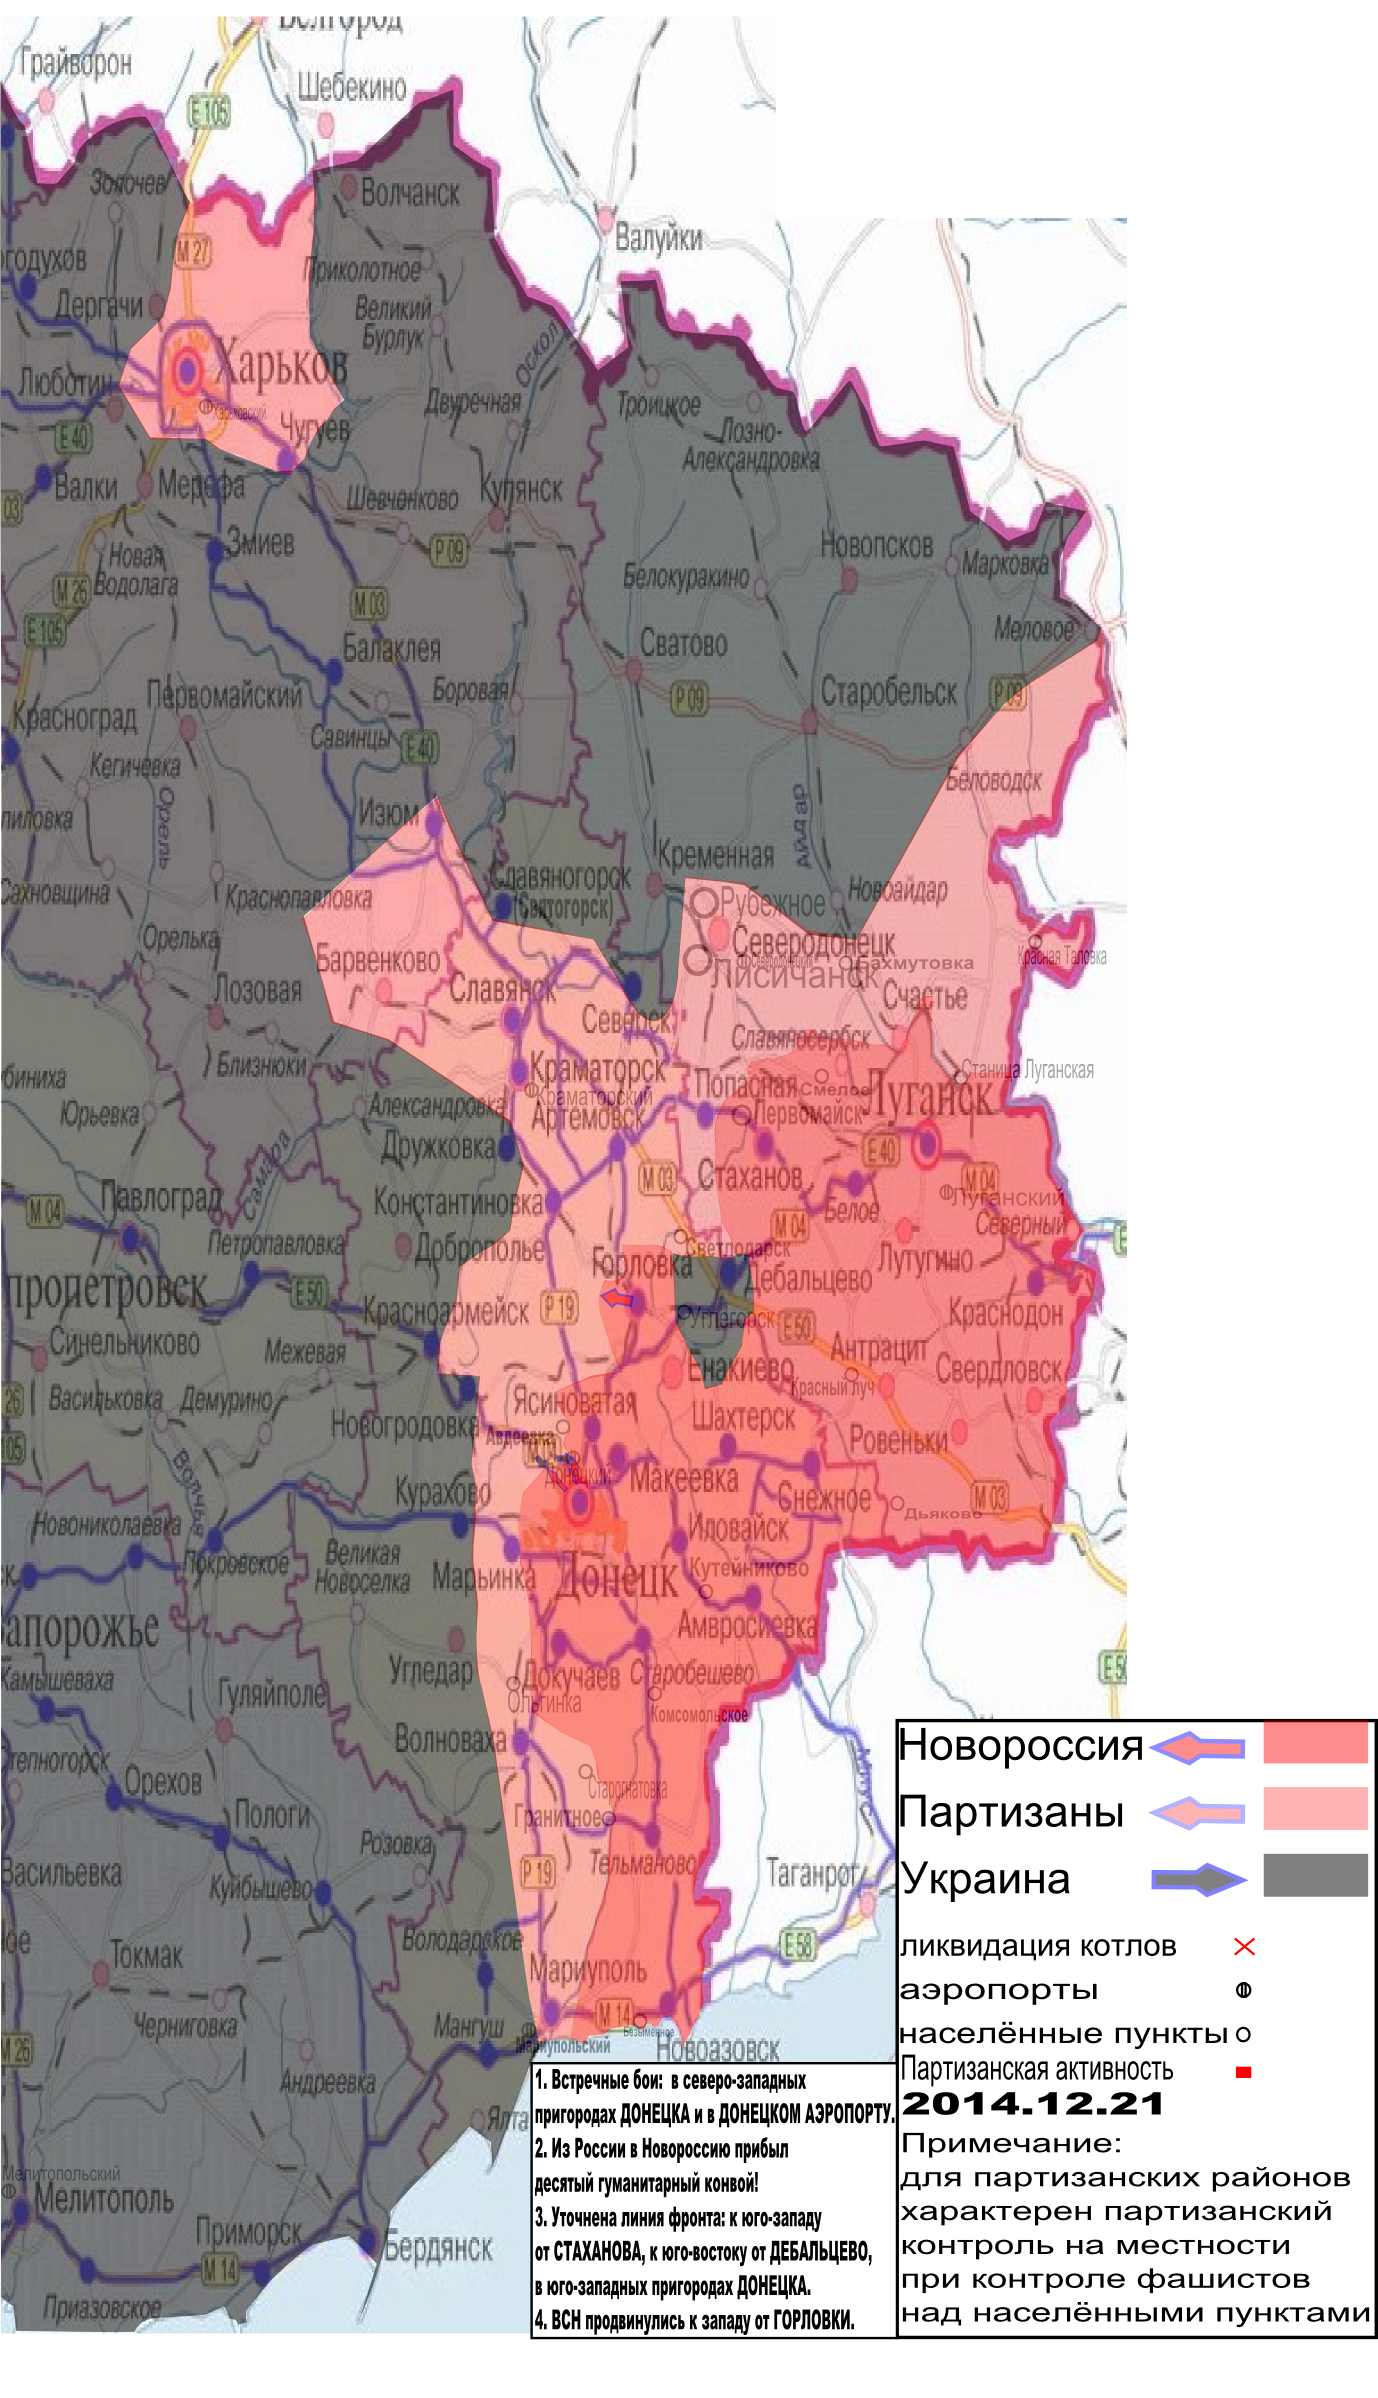 Карта боевых действий в Новороссии с обозначением зон партизанской активности 21 декабря 2014